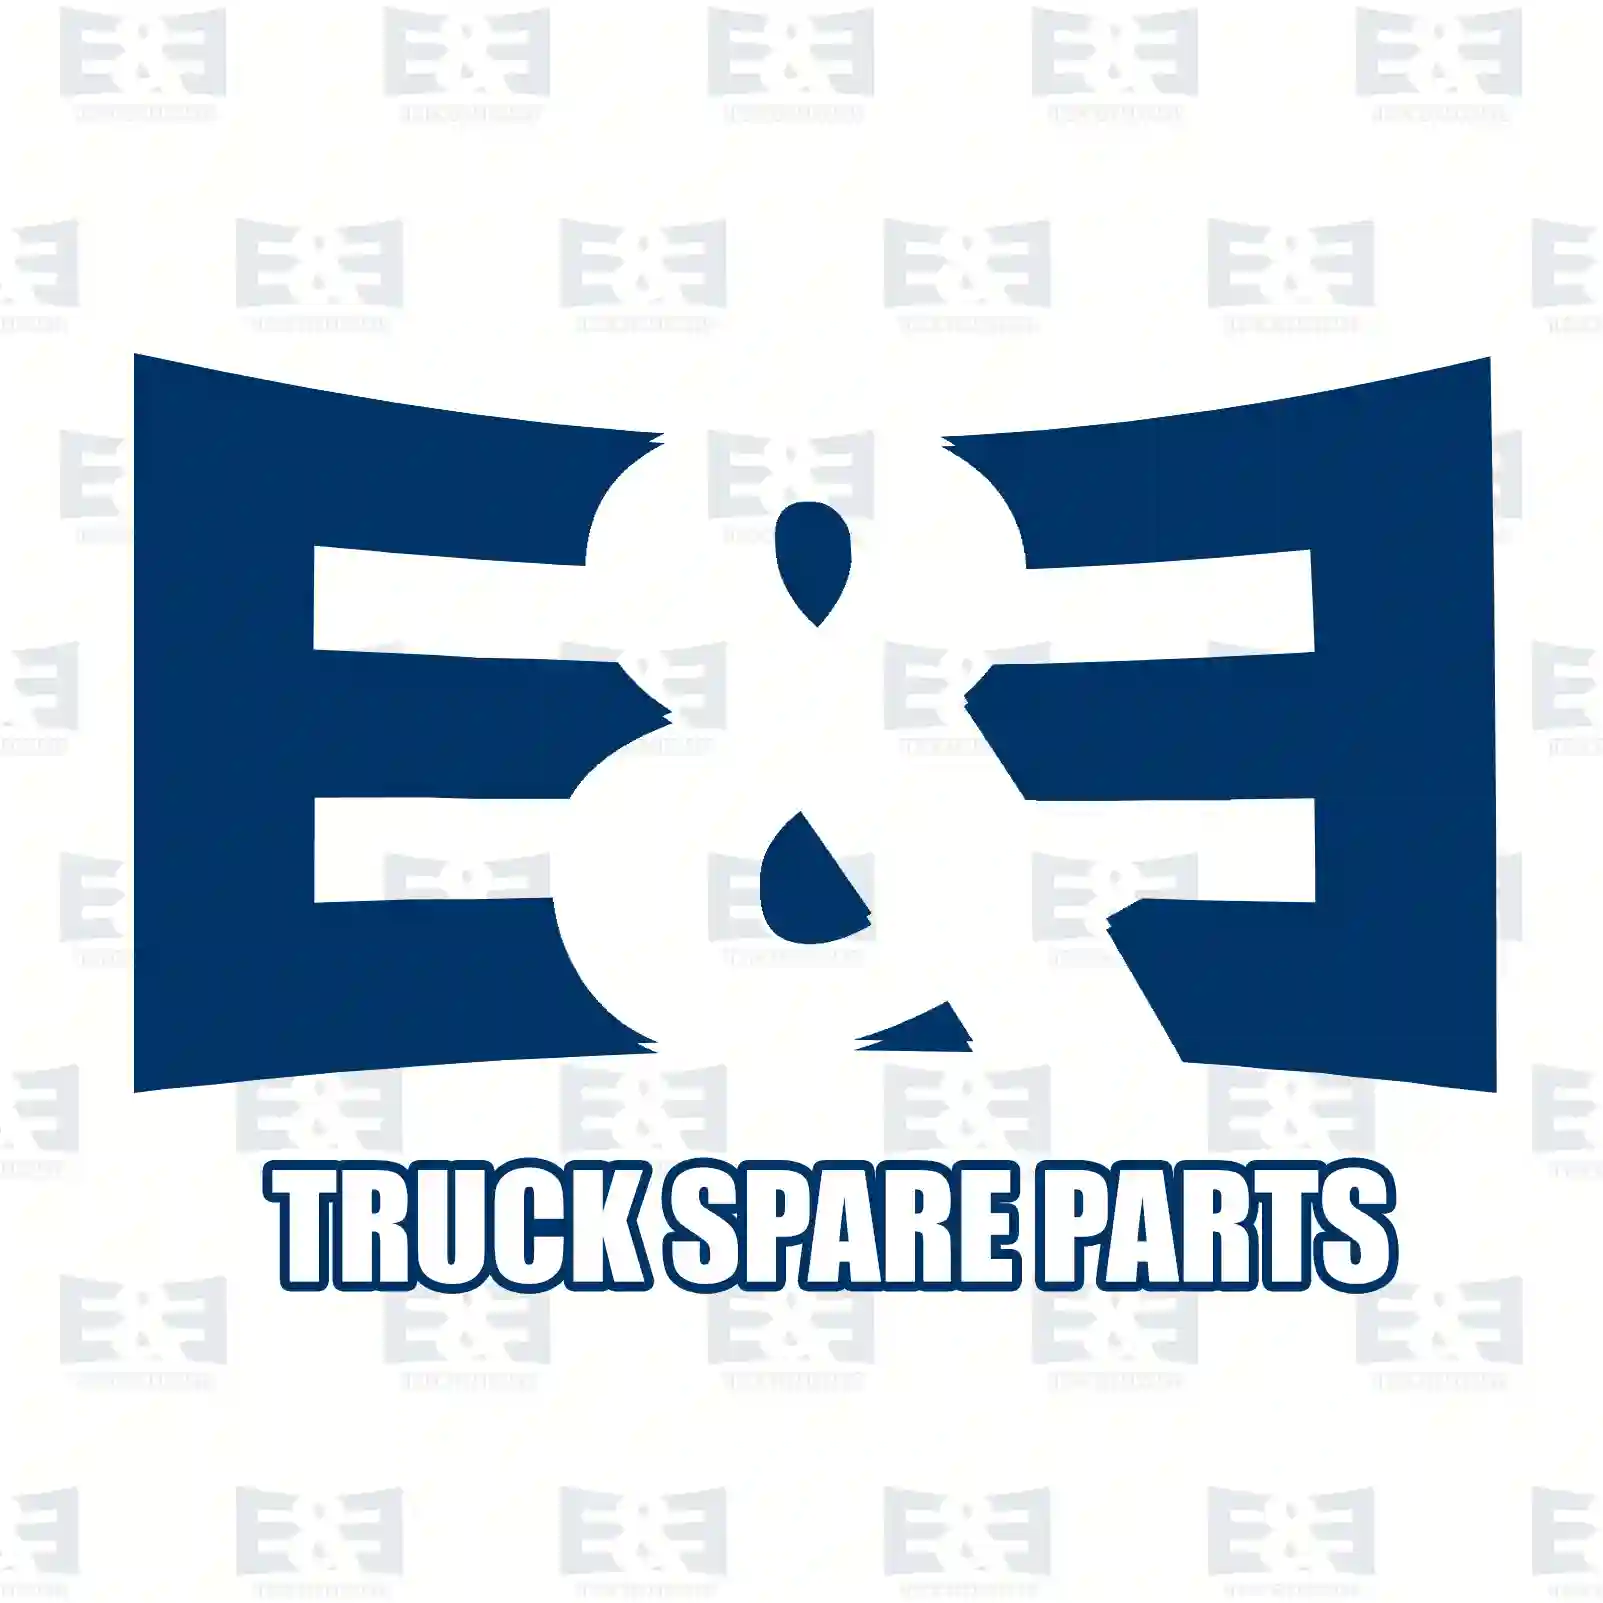 Brake drum, 2E2296379, 04389374, 04449694, 424722, ZF04449694, 04389374, 04449694, 1313675080, 04449694, 424722, ZF04449694, 424722 ||  2E2296379 E&E Truck Spare Parts | Truck Spare Parts, Auotomotive Spare Parts Brake drum, 2E2296379, 04389374, 04449694, 424722, ZF04449694, 04389374, 04449694, 1313675080, 04449694, 424722, ZF04449694, 424722 ||  2E2296379 E&E Truck Spare Parts | Truck Spare Parts, Auotomotive Spare Parts